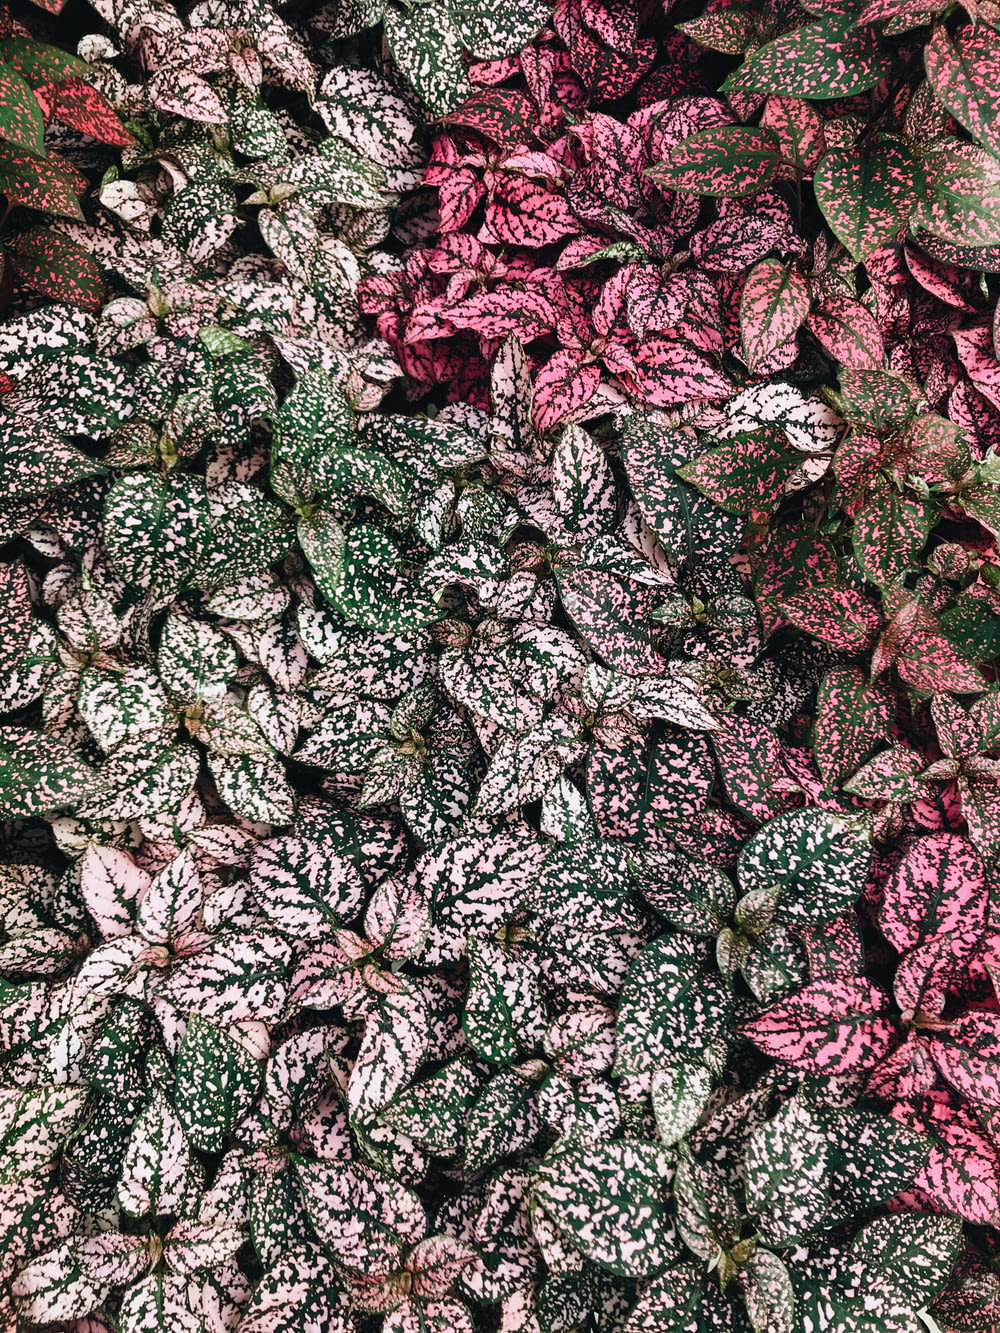 selective focus photography of polka-dot plants